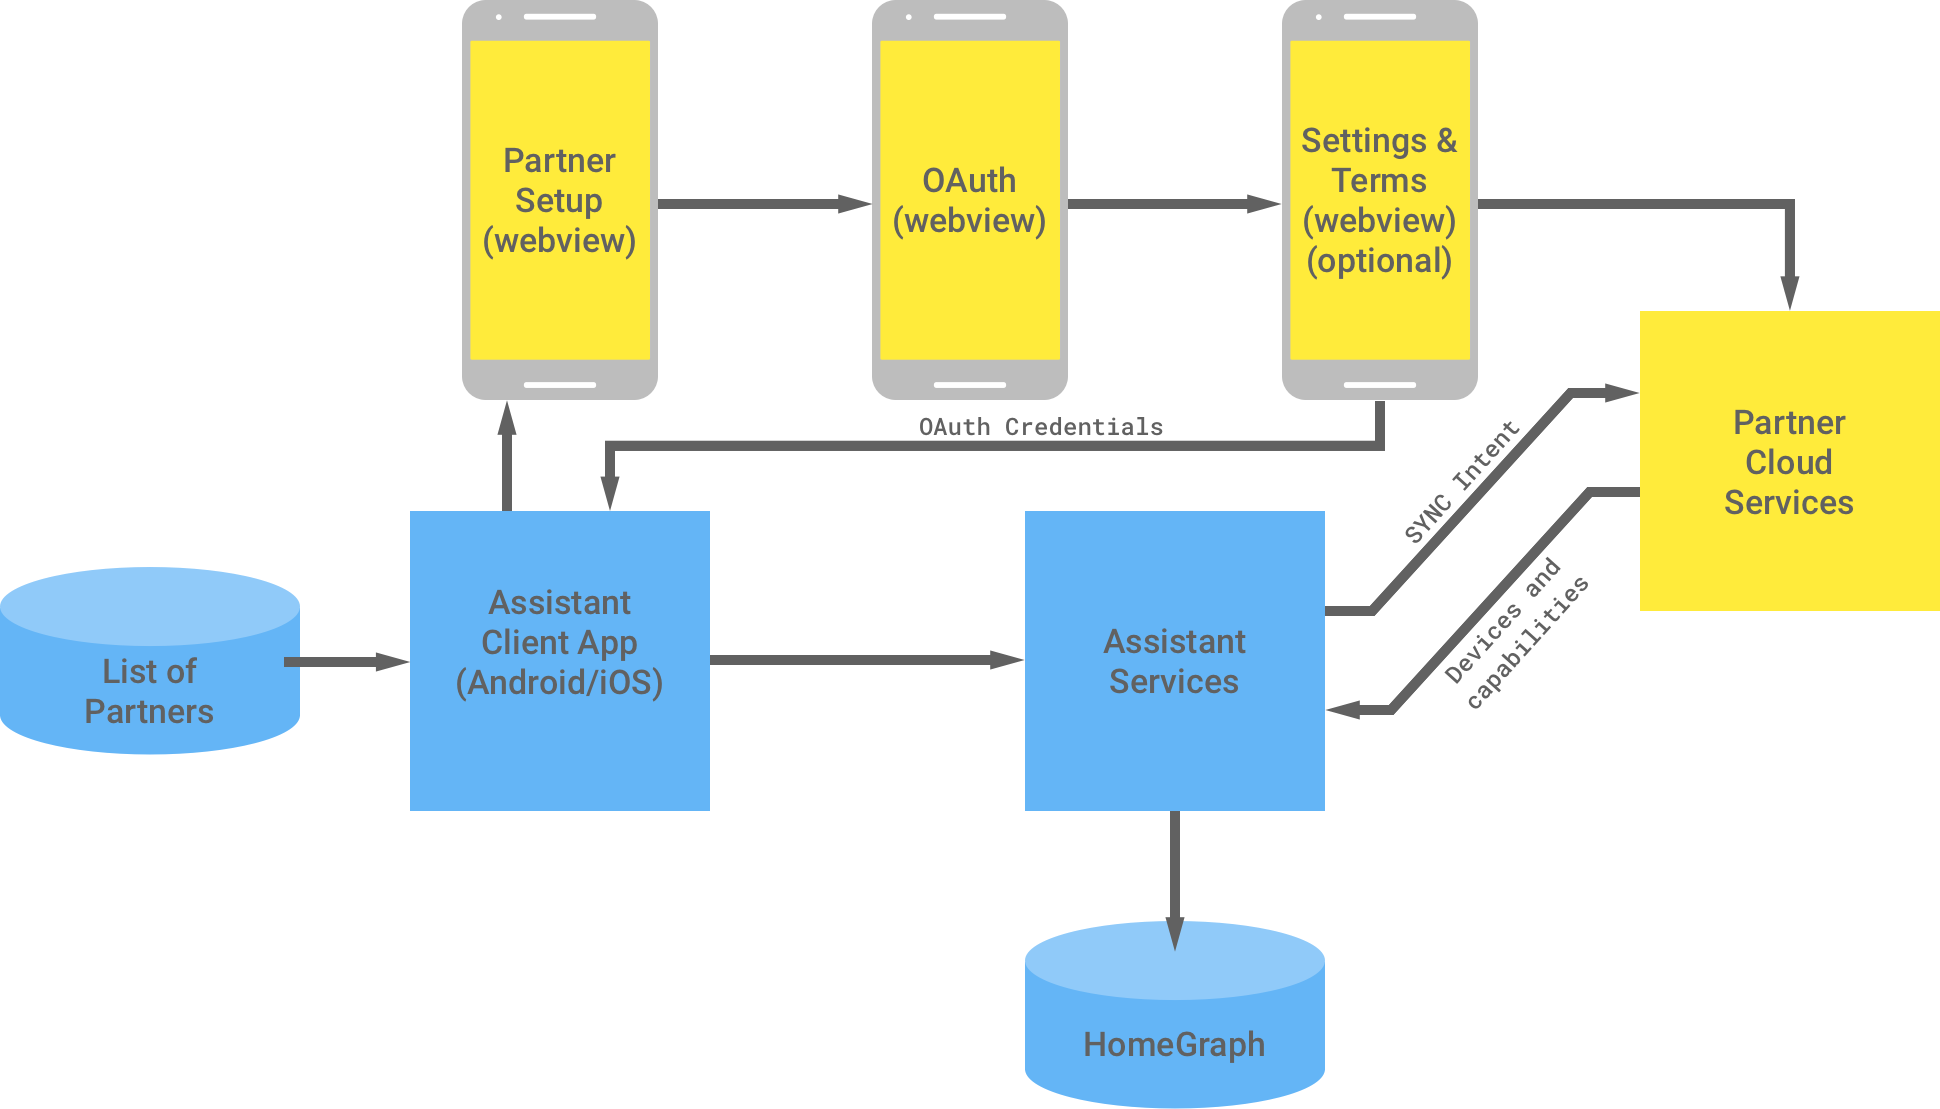 下圖顯示 Google 基礎架構與合作夥伴基礎架構之間的互動。在 Google 基礎架構中，Google 助理用戶端應用程式可以使用合作夥伴清單，然後由合作夥伴提供給合作夥伴基礎架構完成 OAuth 驗證。合作夥伴端的 OAuth 驗證包括合作夥伴設定 WebView、OAuth 網頁畫面、選用設定和條款，以及合作夥伴雲端服務。接著，合作夥伴基礎架構會將 OAuth 憑證傳回至 Google 助理用戶端應用程式。合作夥伴雲端服務會將可用裝置和功能傳送至 Google 助理服務，然後將資訊儲存至 Home Graph 中。